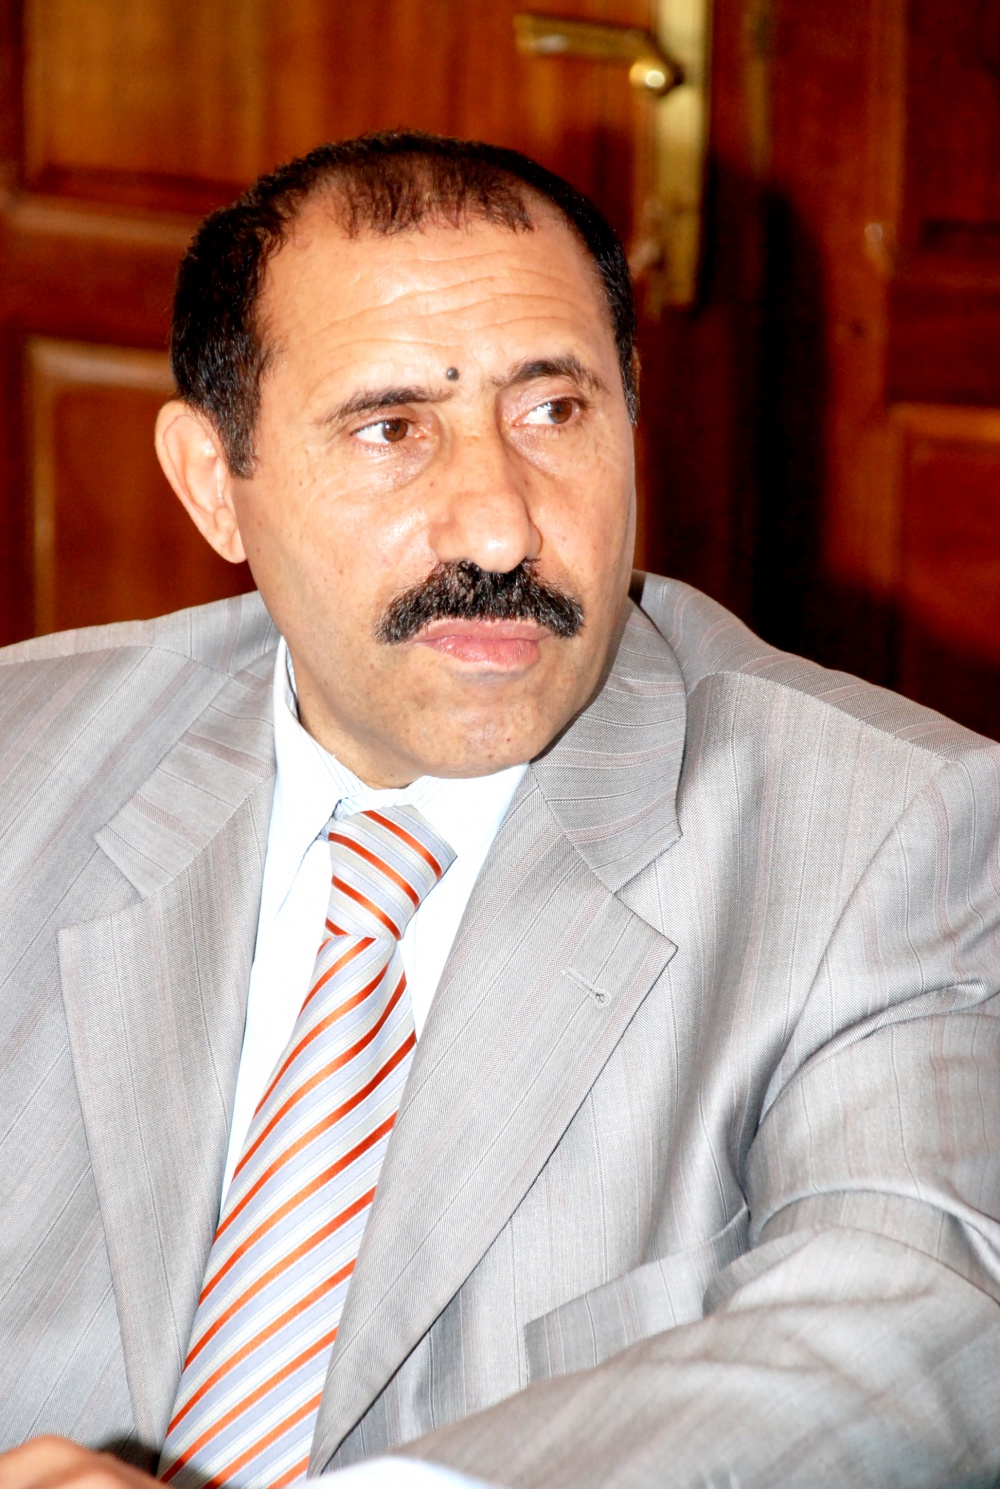 أنباء عن إفراج الشرعية عن مسؤول حوثي رفيع تم اعتقاله قبل أيام في مأرب (الإسم)